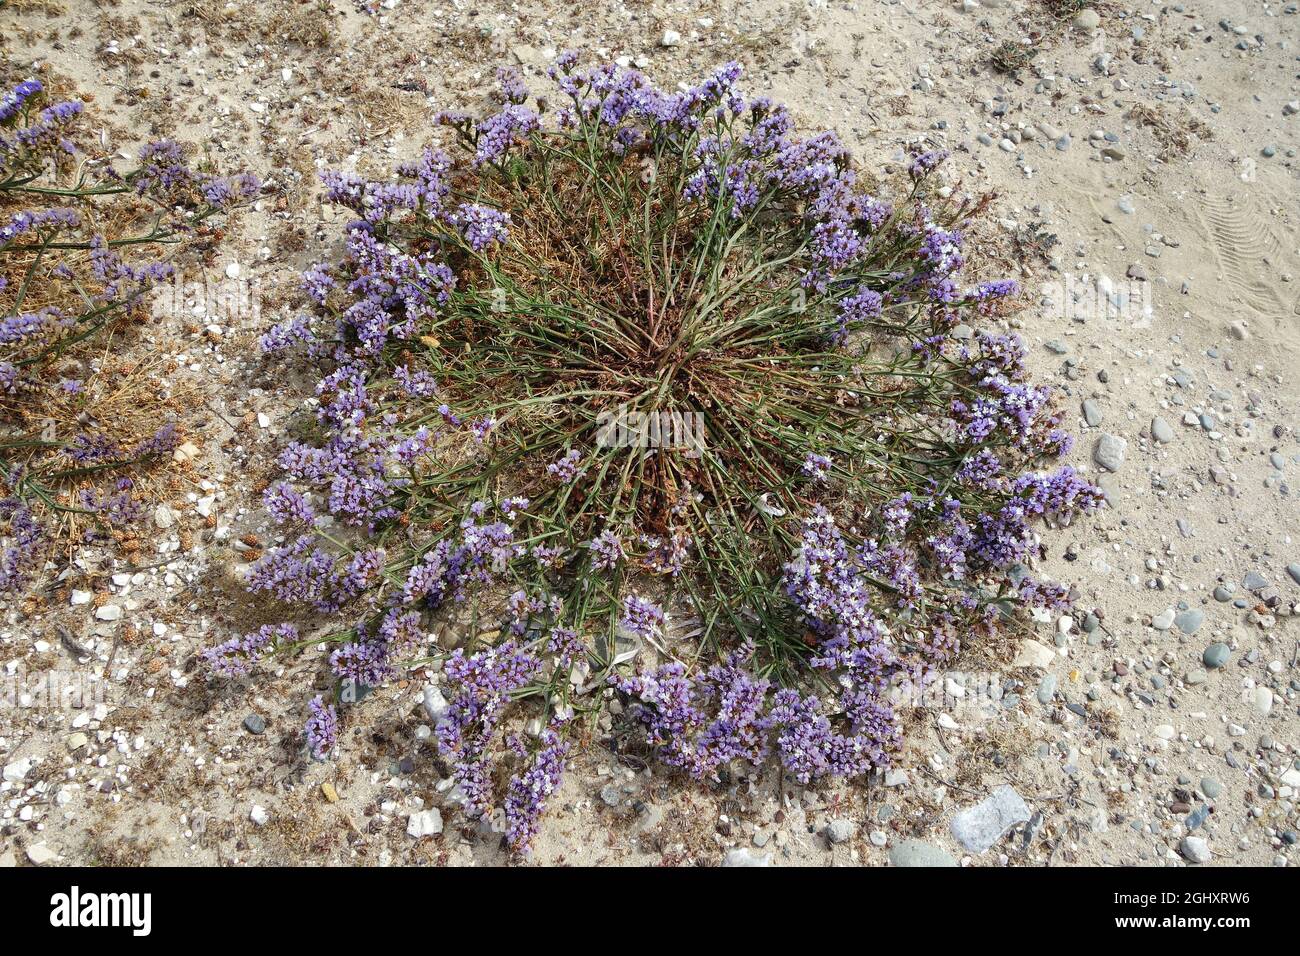 wavyleaf sea lavender, Geflügelter Strandflieder, Limonium sinuatum, egynyári sóvirág, Cyprus, Europe Stock Photo